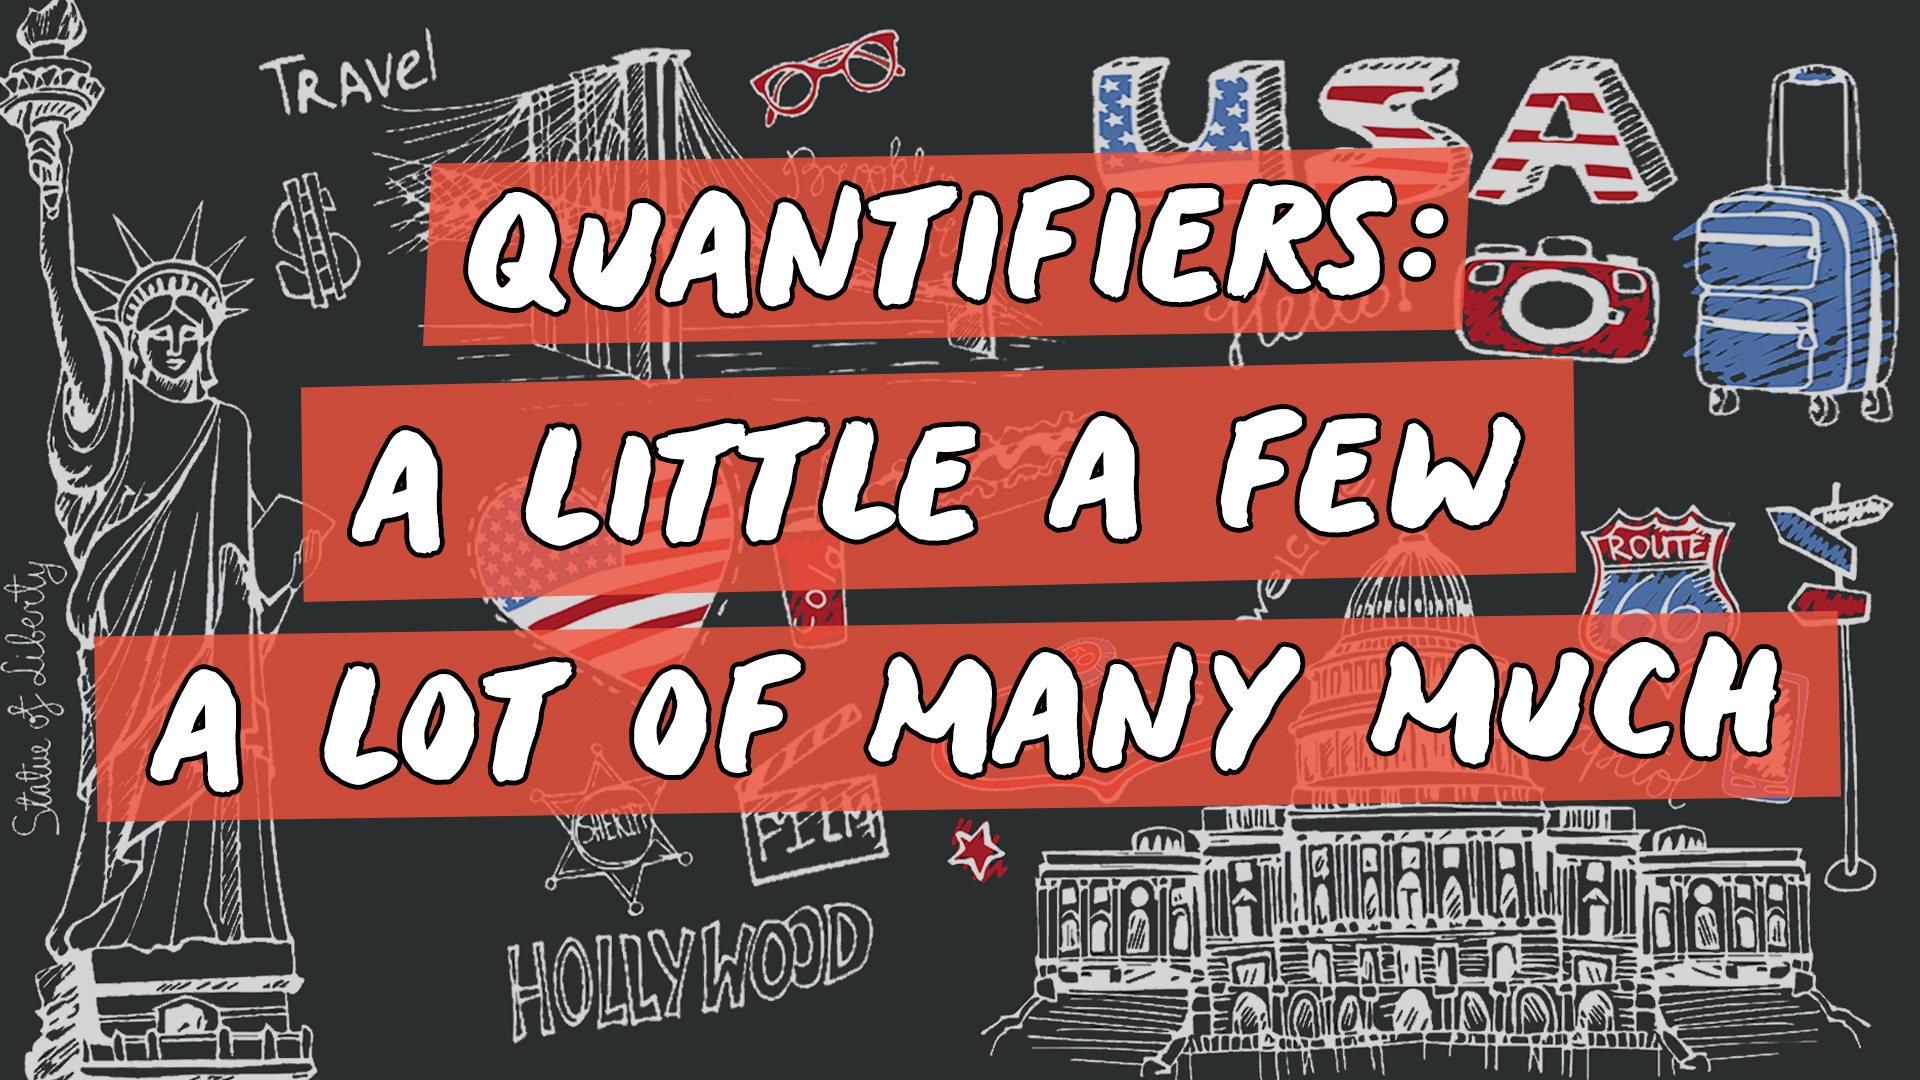 Escrito"Quantifiers: a little a few a lot of many much" sobre representação de vários elementos da cultura do inglês americano.